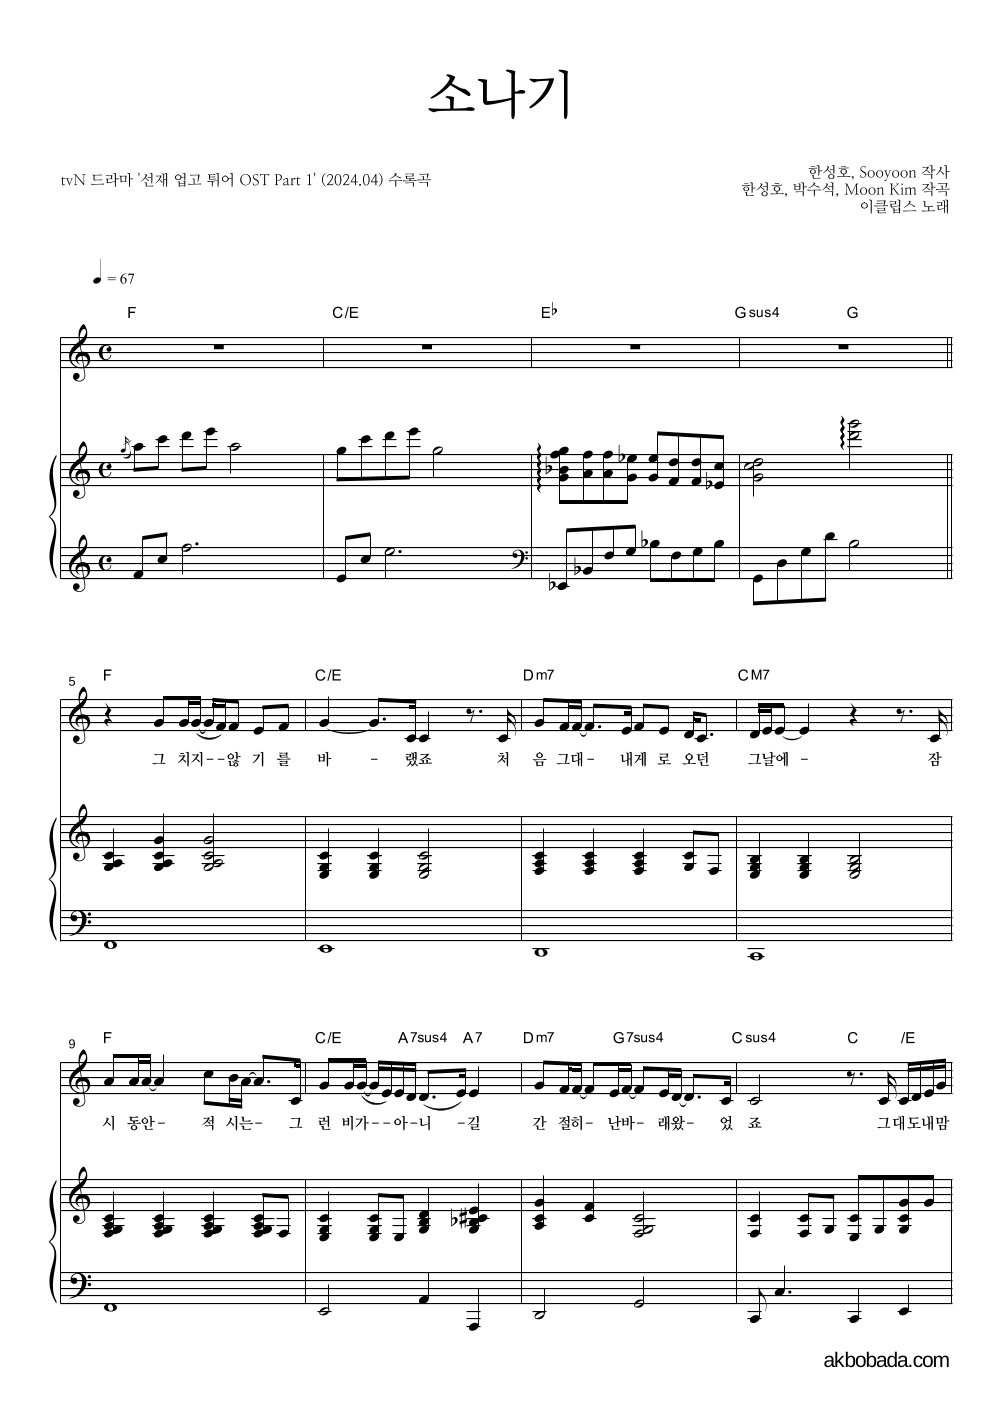 이클립스 - 소나기 피아노 3단 악보 